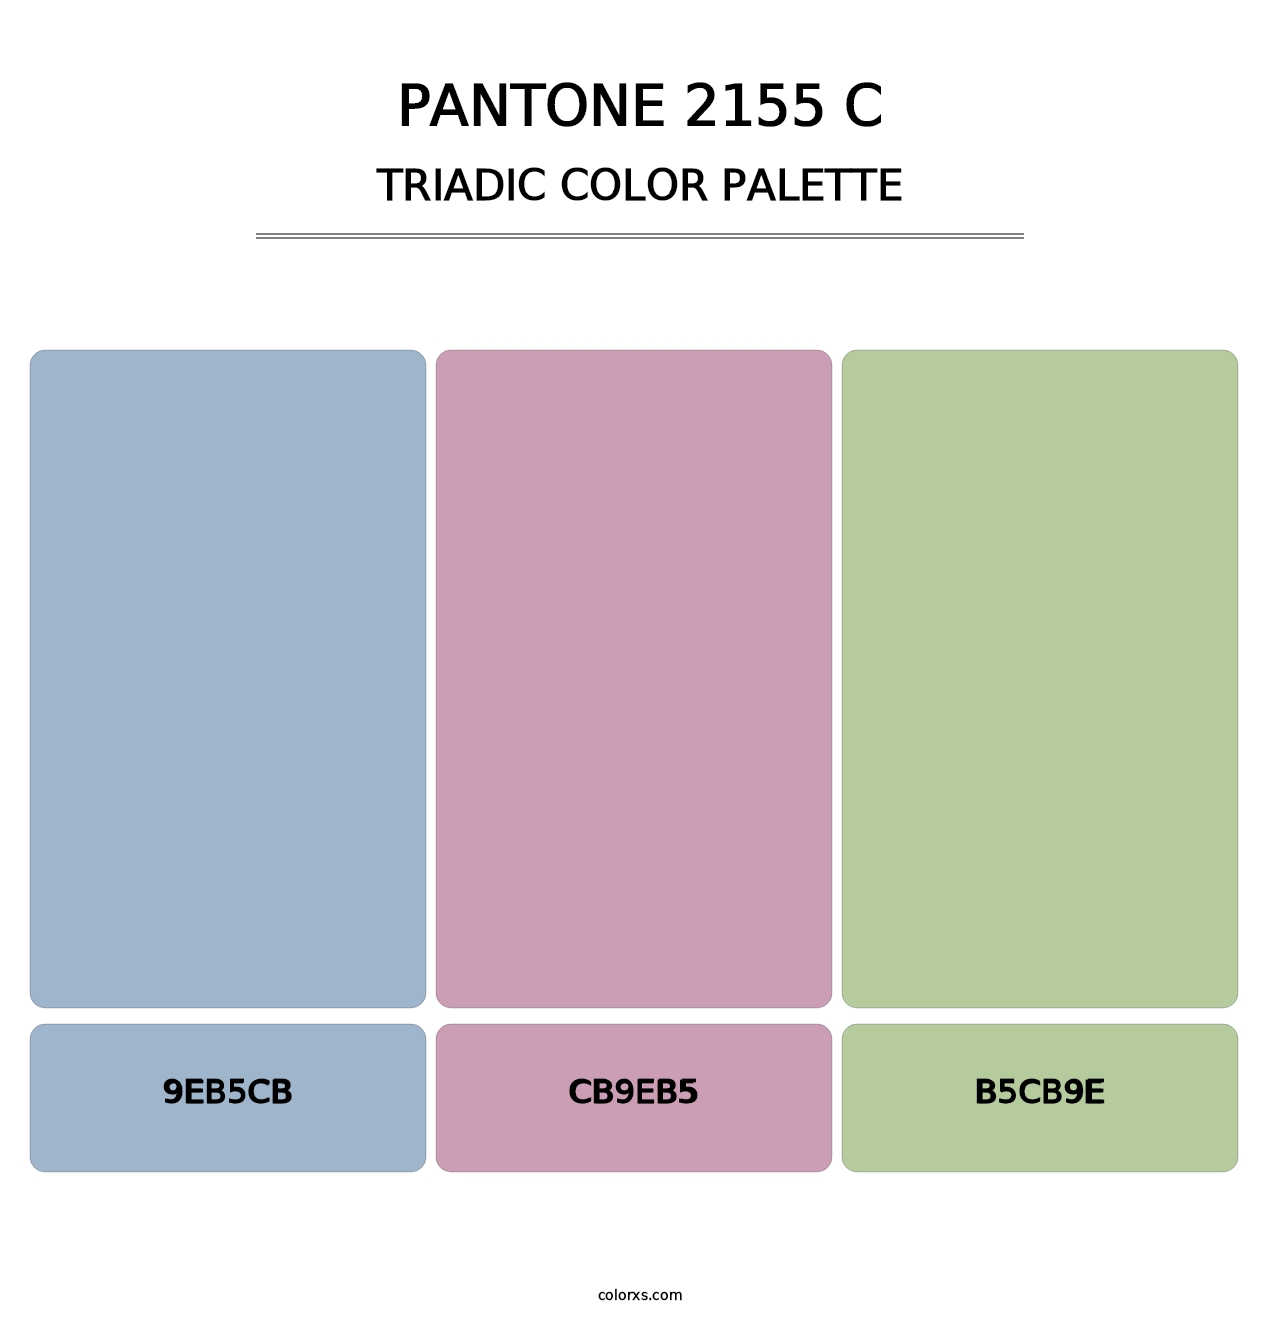 PANTONE 2155 C - Triadic Color Palette